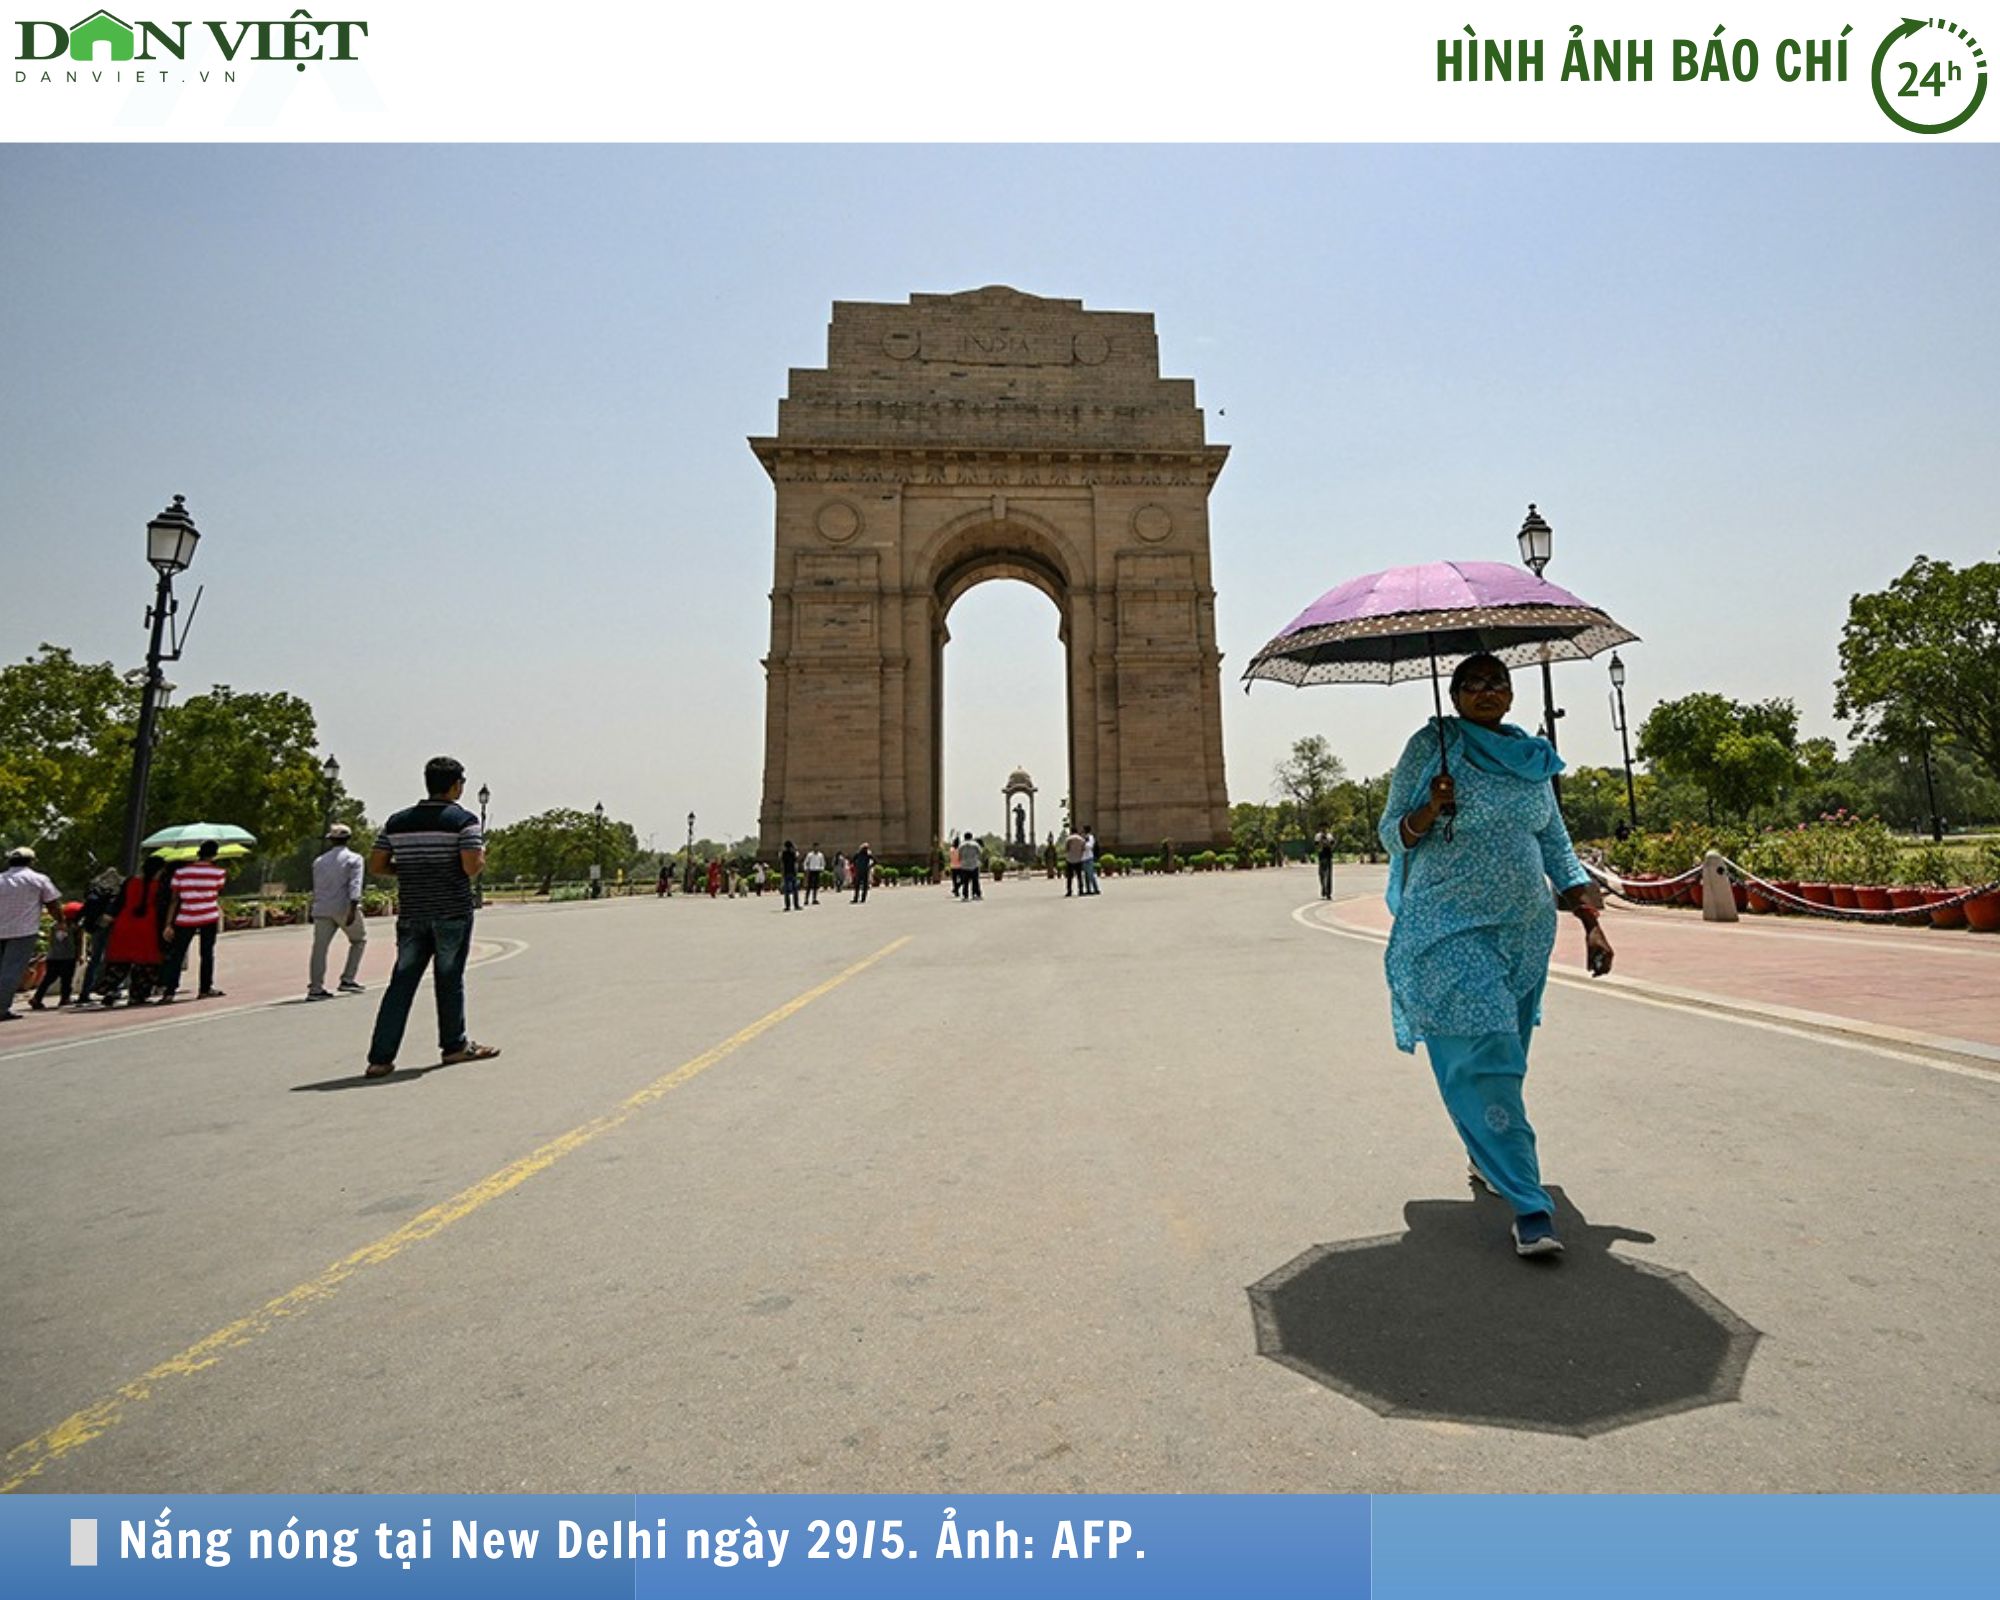 Hình ảnh báo chí 24h: Thủ đô của Ấn Độ nắng nóng gần 50 độ C, cao nhất từ trước đến nay- Ảnh 1.